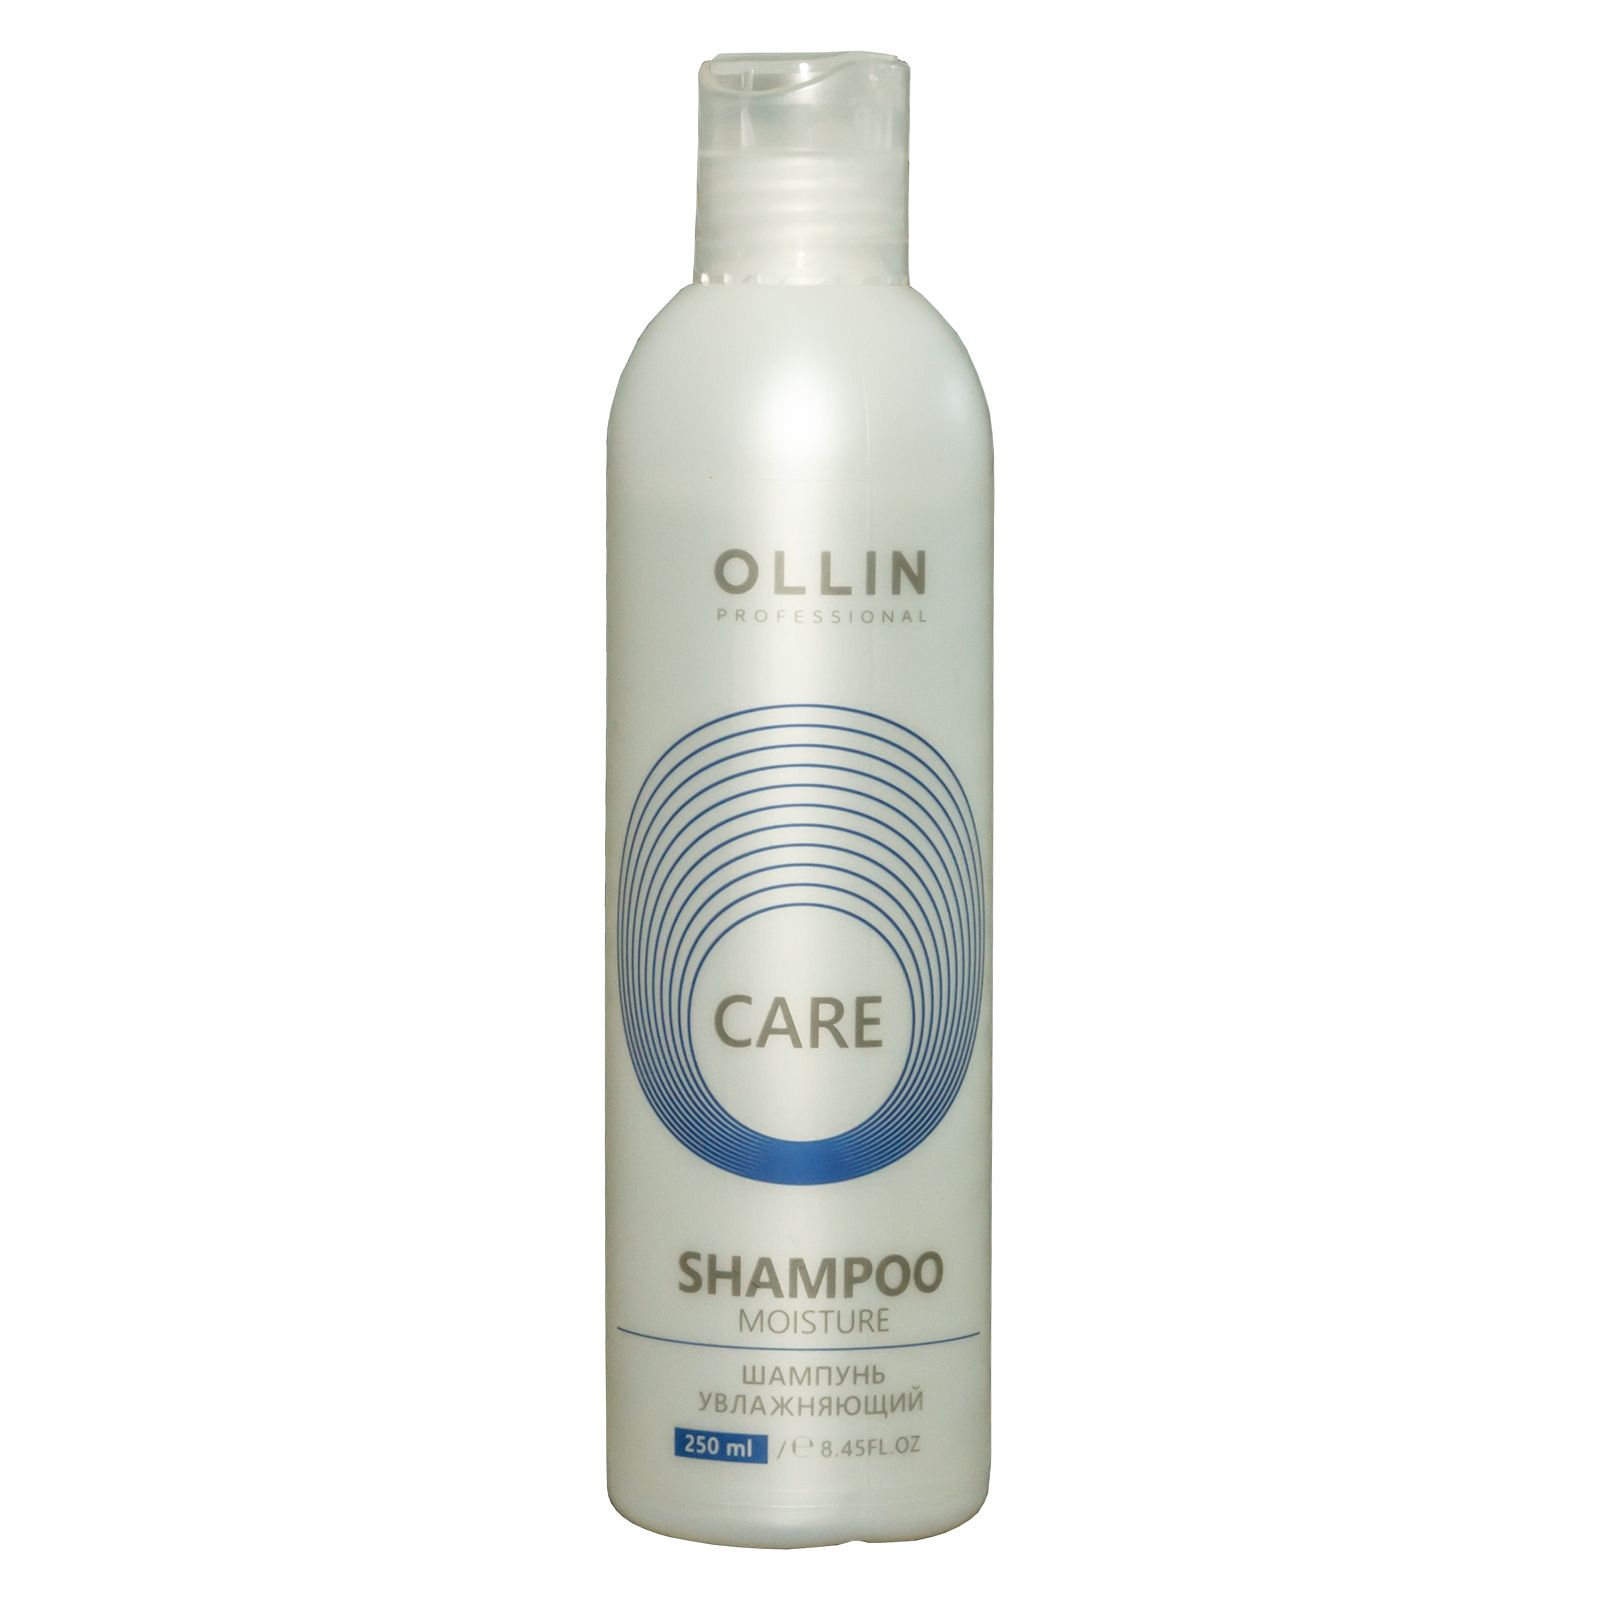 Ollin Professional Care Moisture Shampoo - Шампунь увлажняющий 250 мл